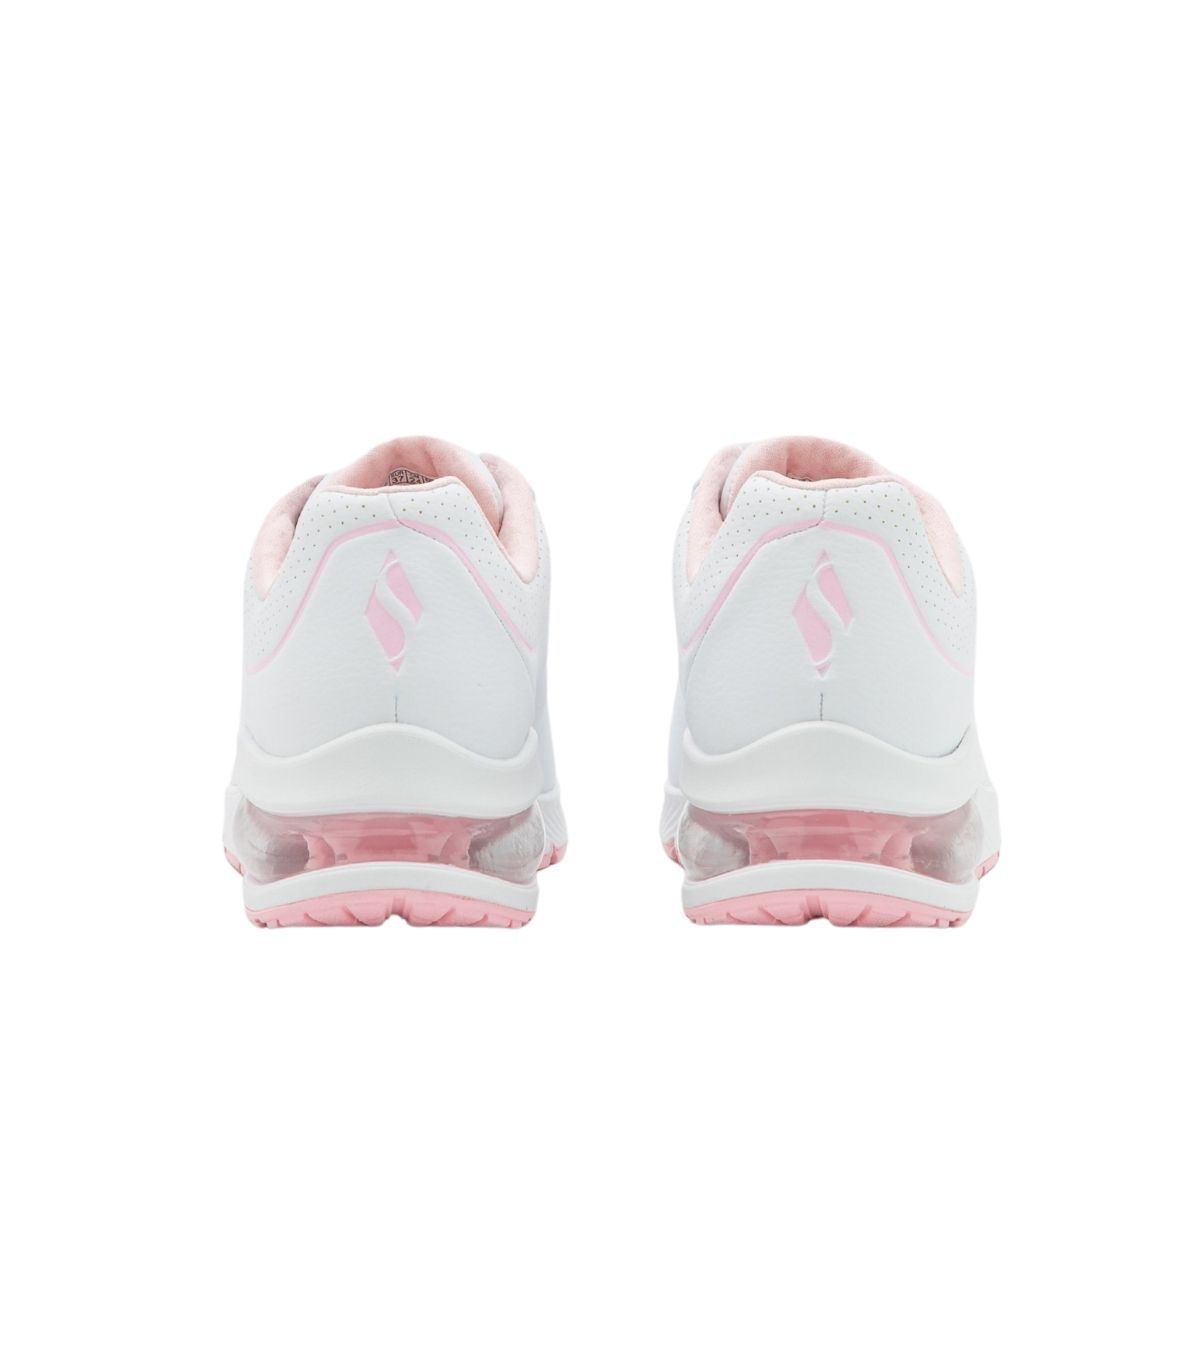 Último imperdonable Publicidad Zapatillas Skechers UNO 2 Mujer White Pink. Oferta y Comprar.